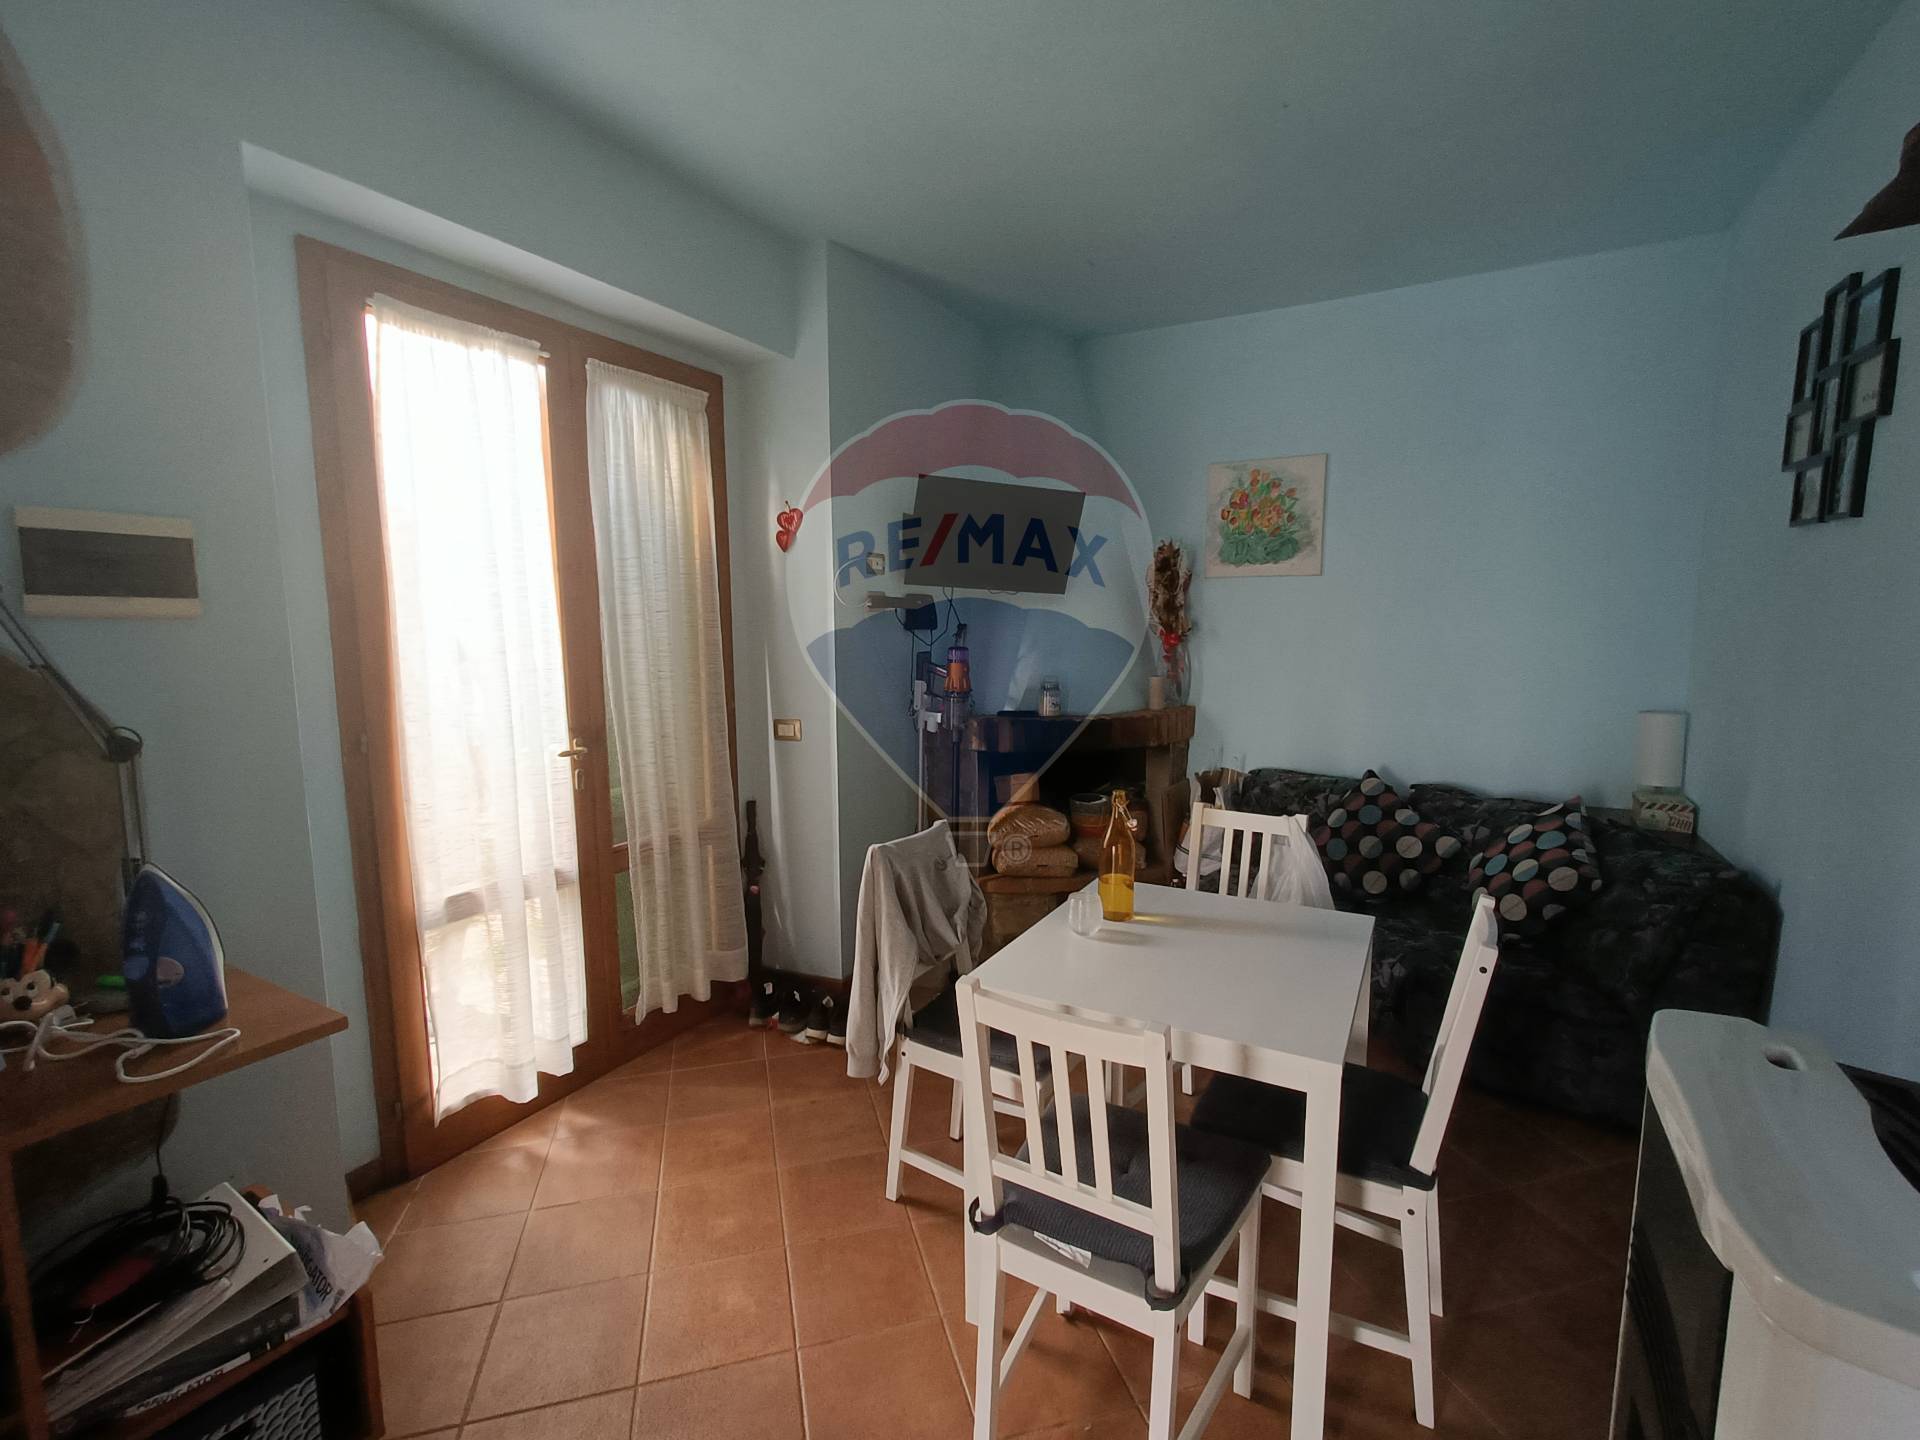 Appartamento in affitto a Castelfranco Piandiscò, 3 locali, zona Località: Lama, prezzo € 450 | CambioCasa.it